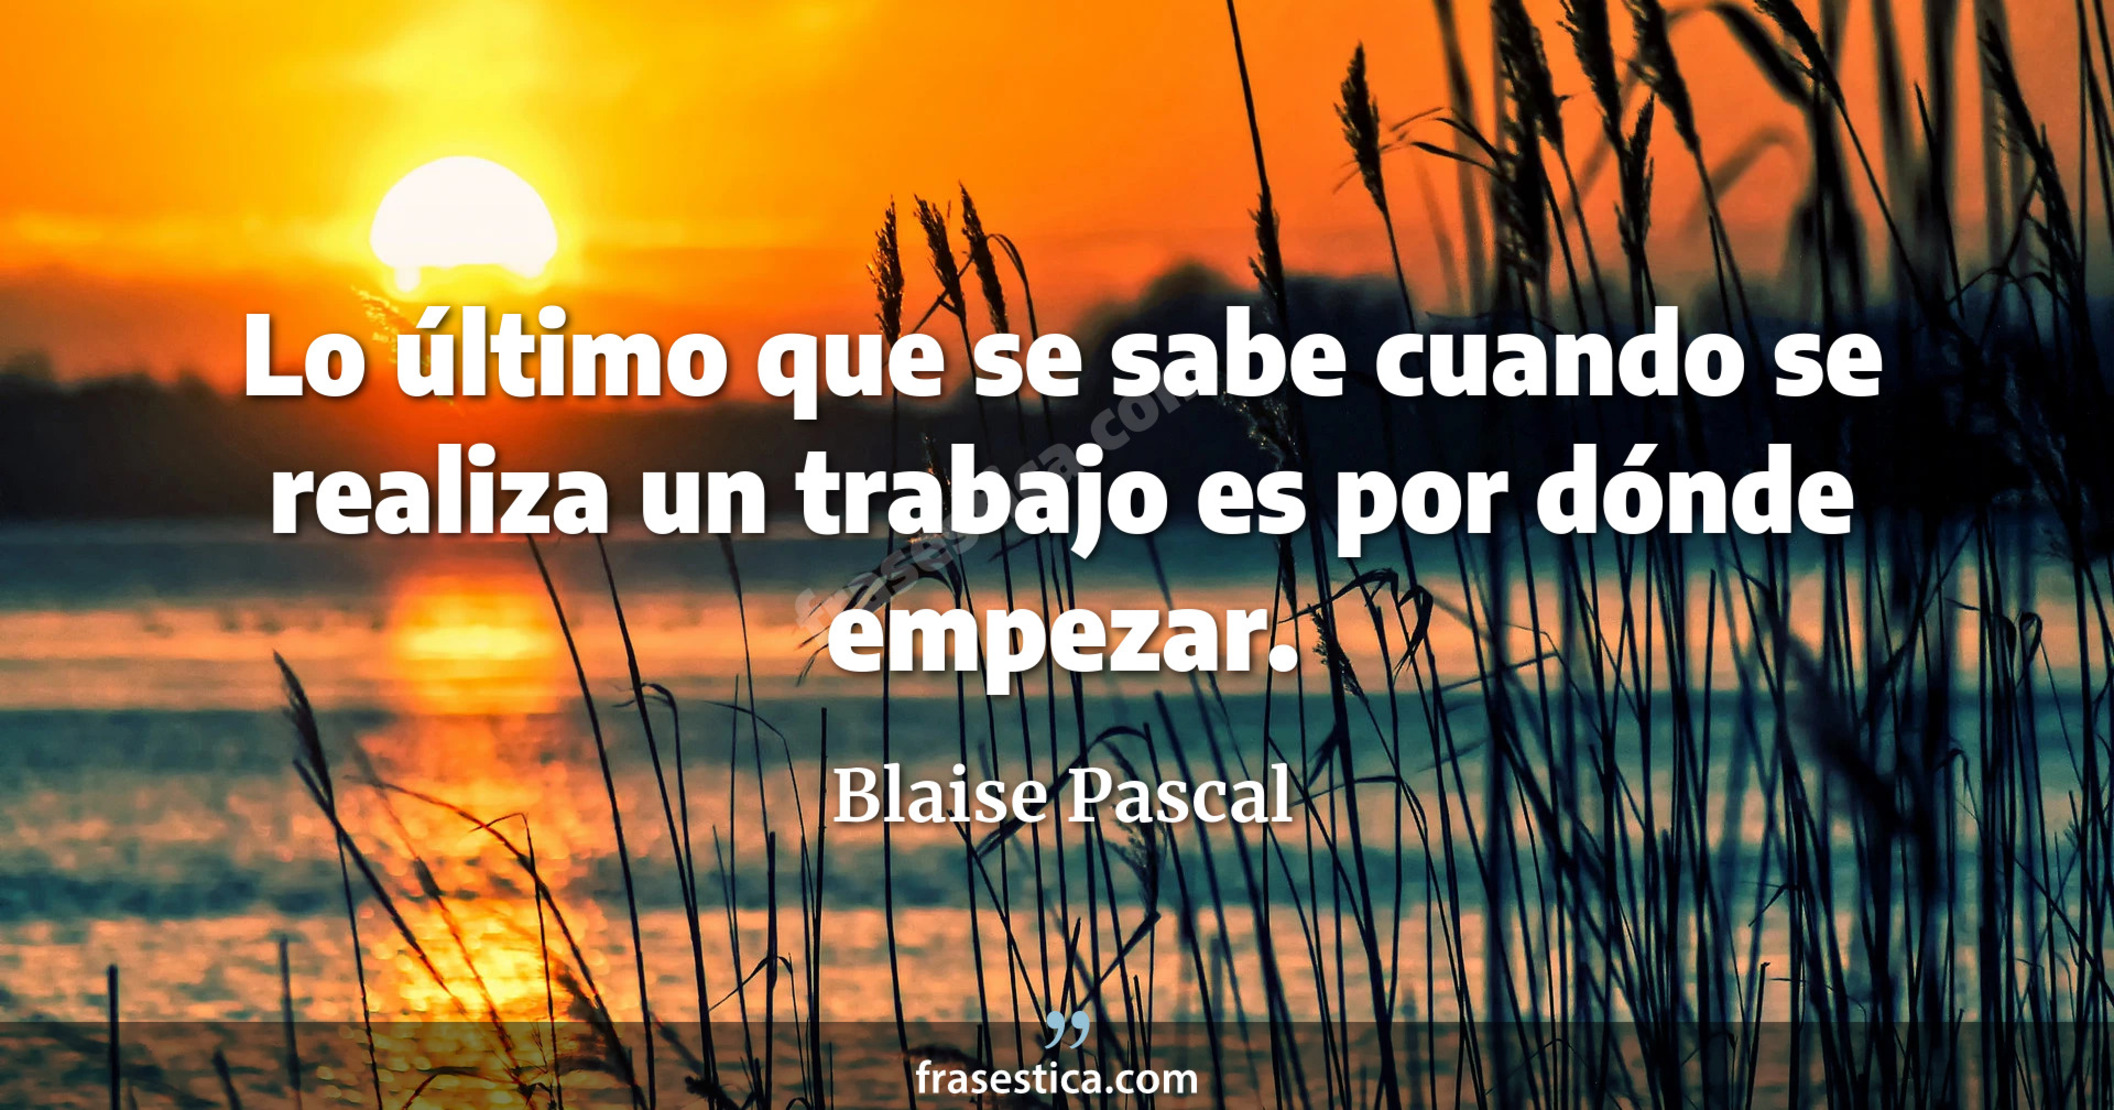 Lo último que se sabe cuando se realiza un trabajo es por dónde empezar. - Blaise Pascal